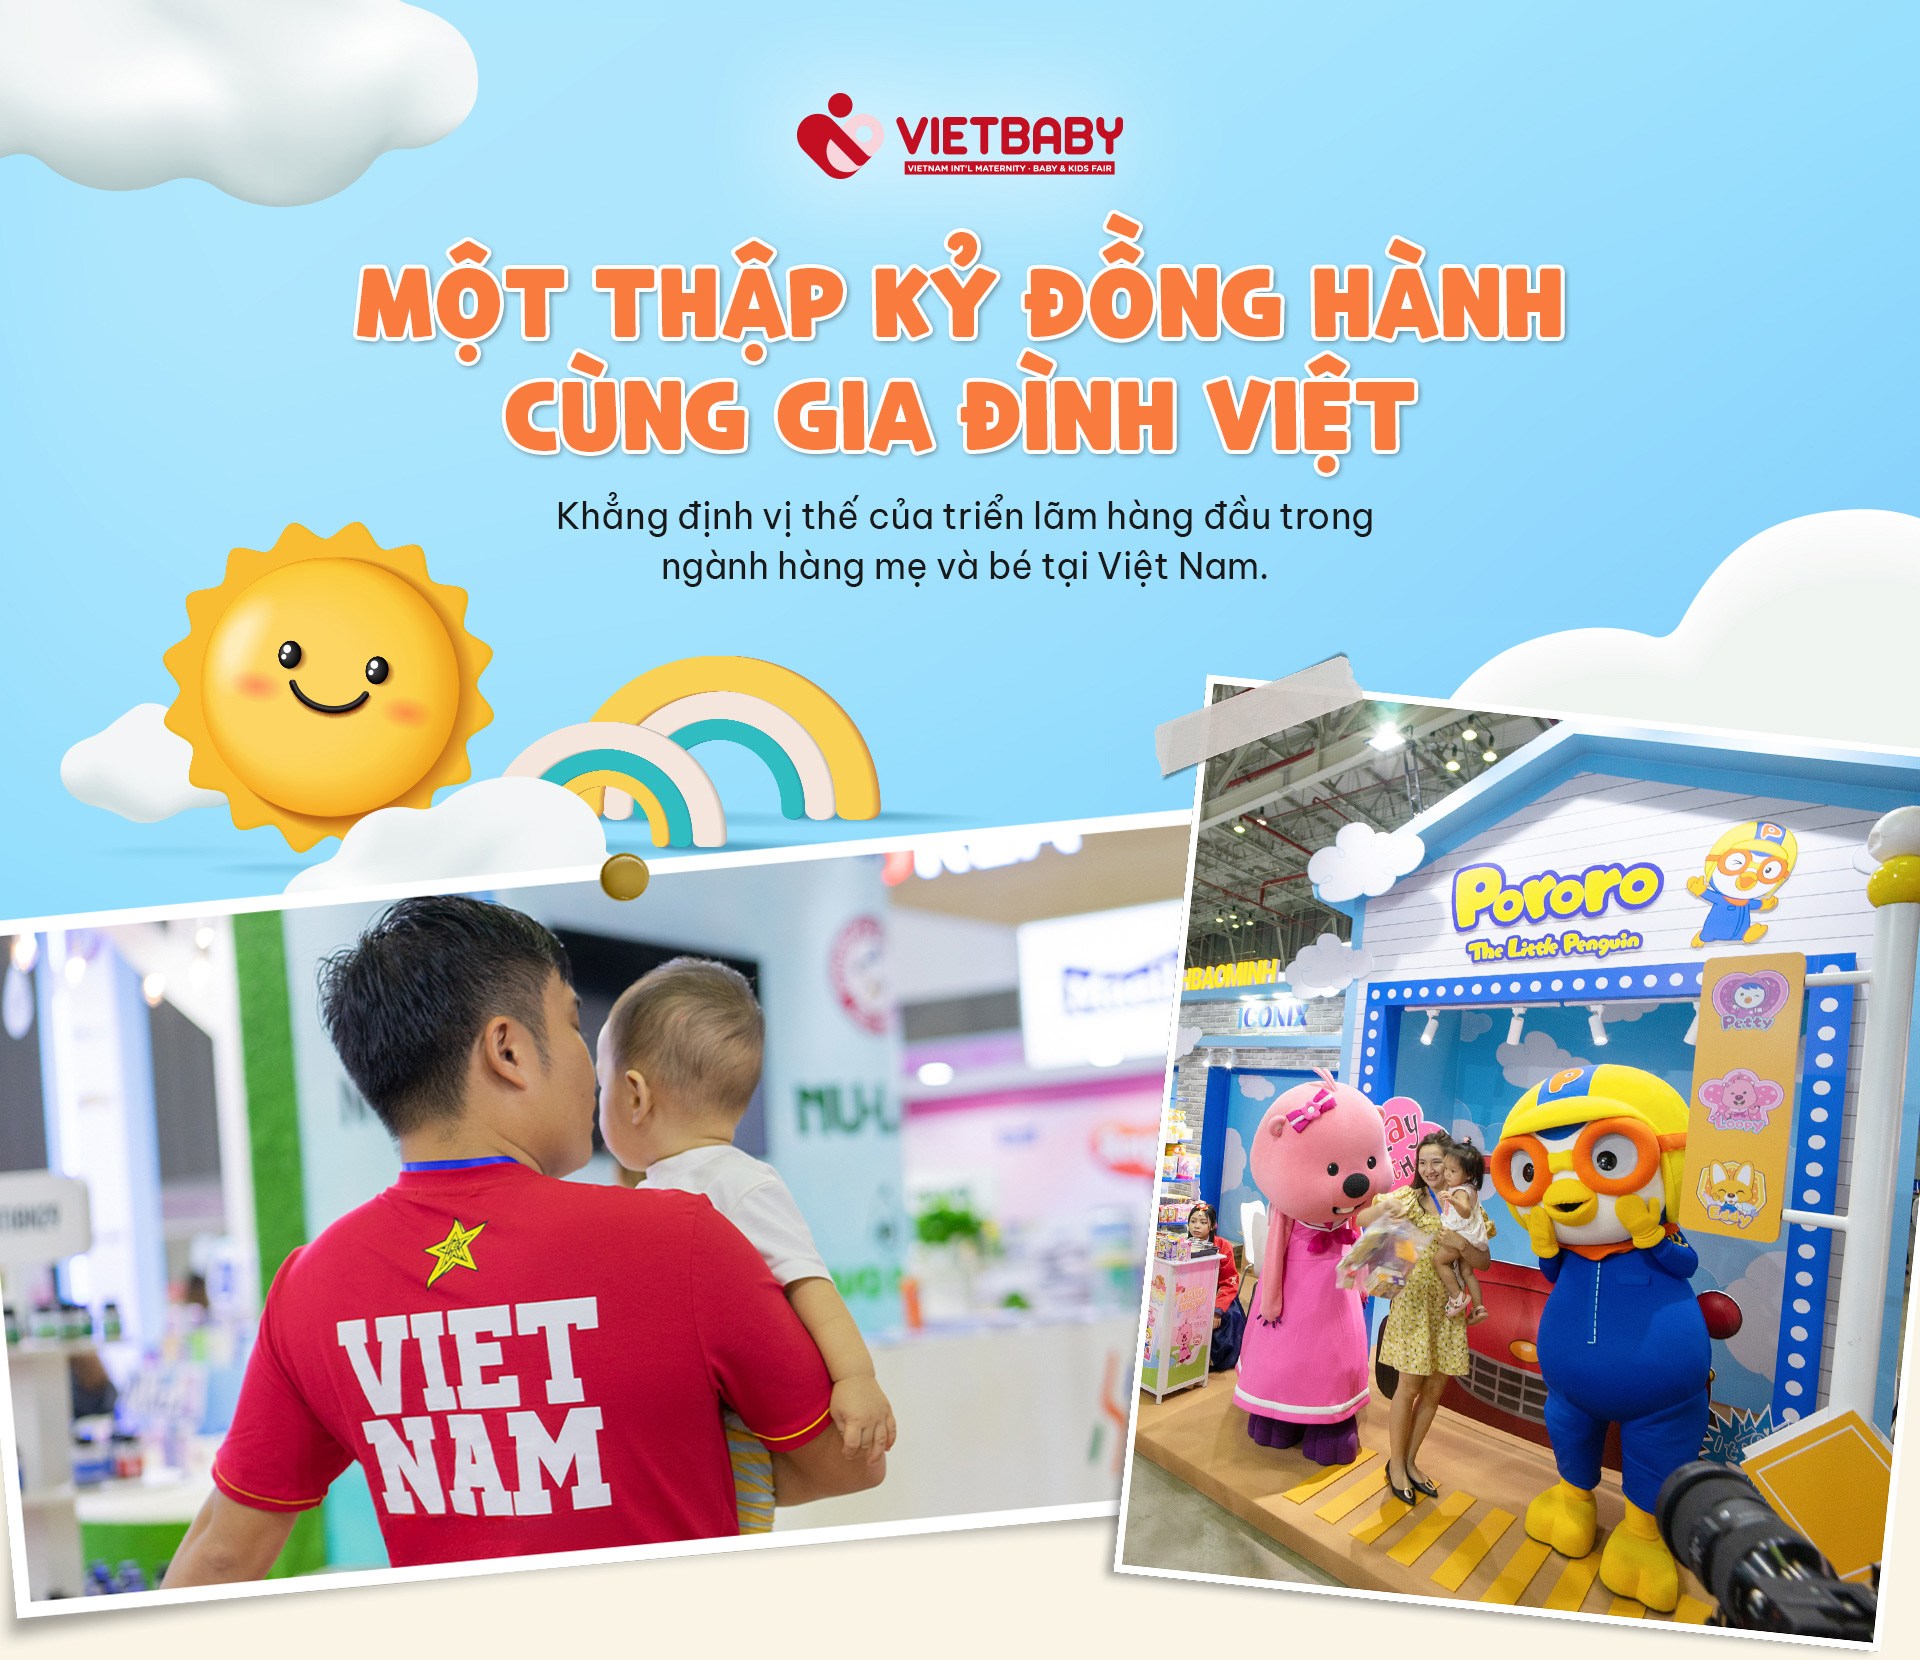 Vietbaby Fair - Một thập kỷ đồng hành cùng gia đình Việt - 1